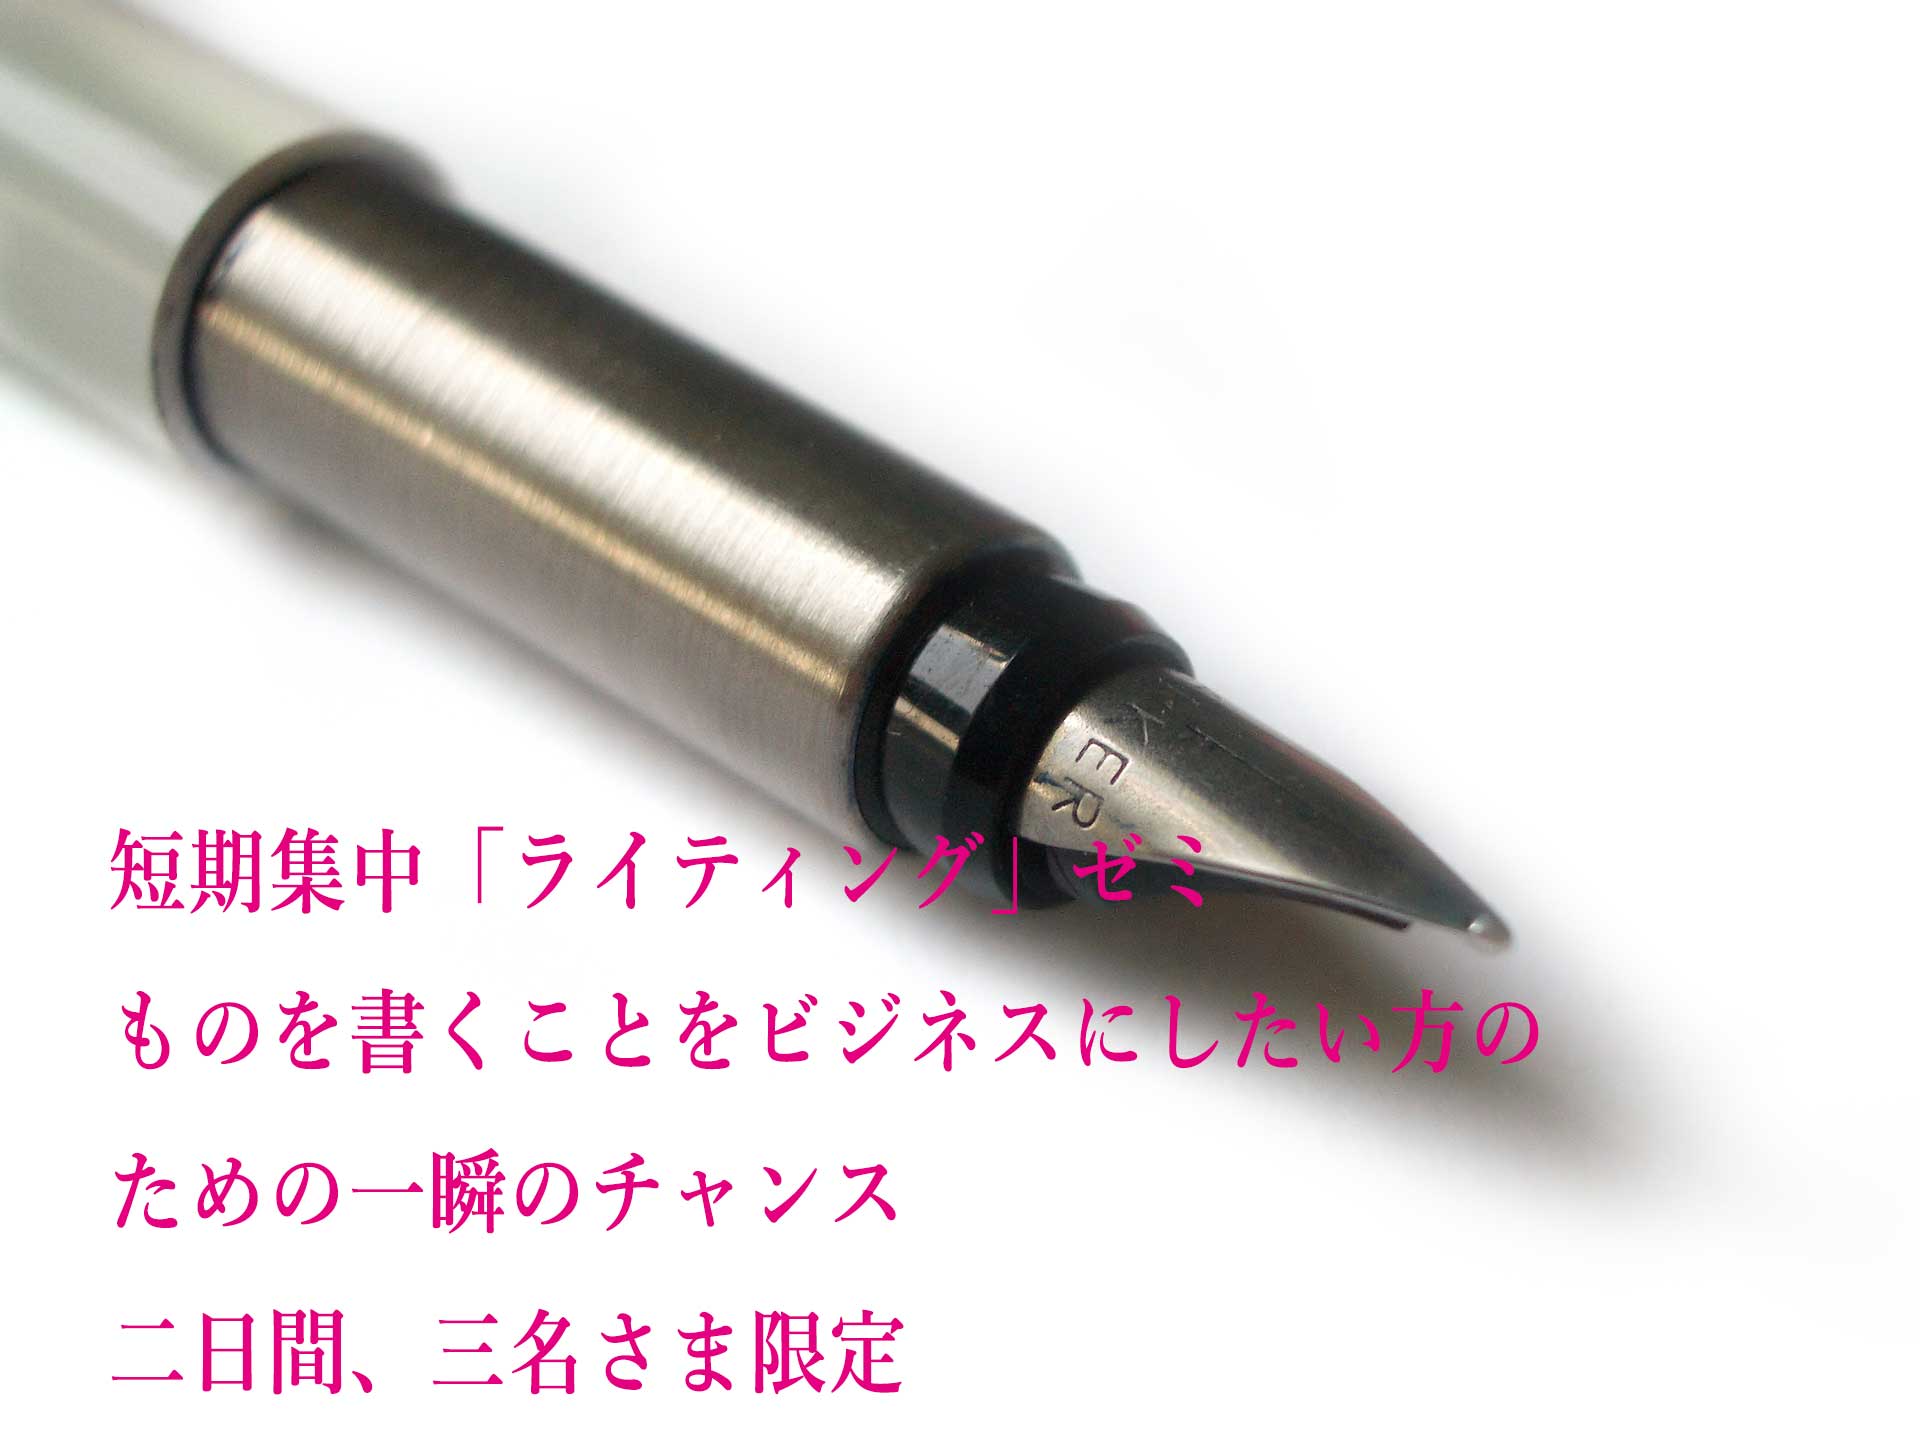 fountain-pen-1550677-1920x1440